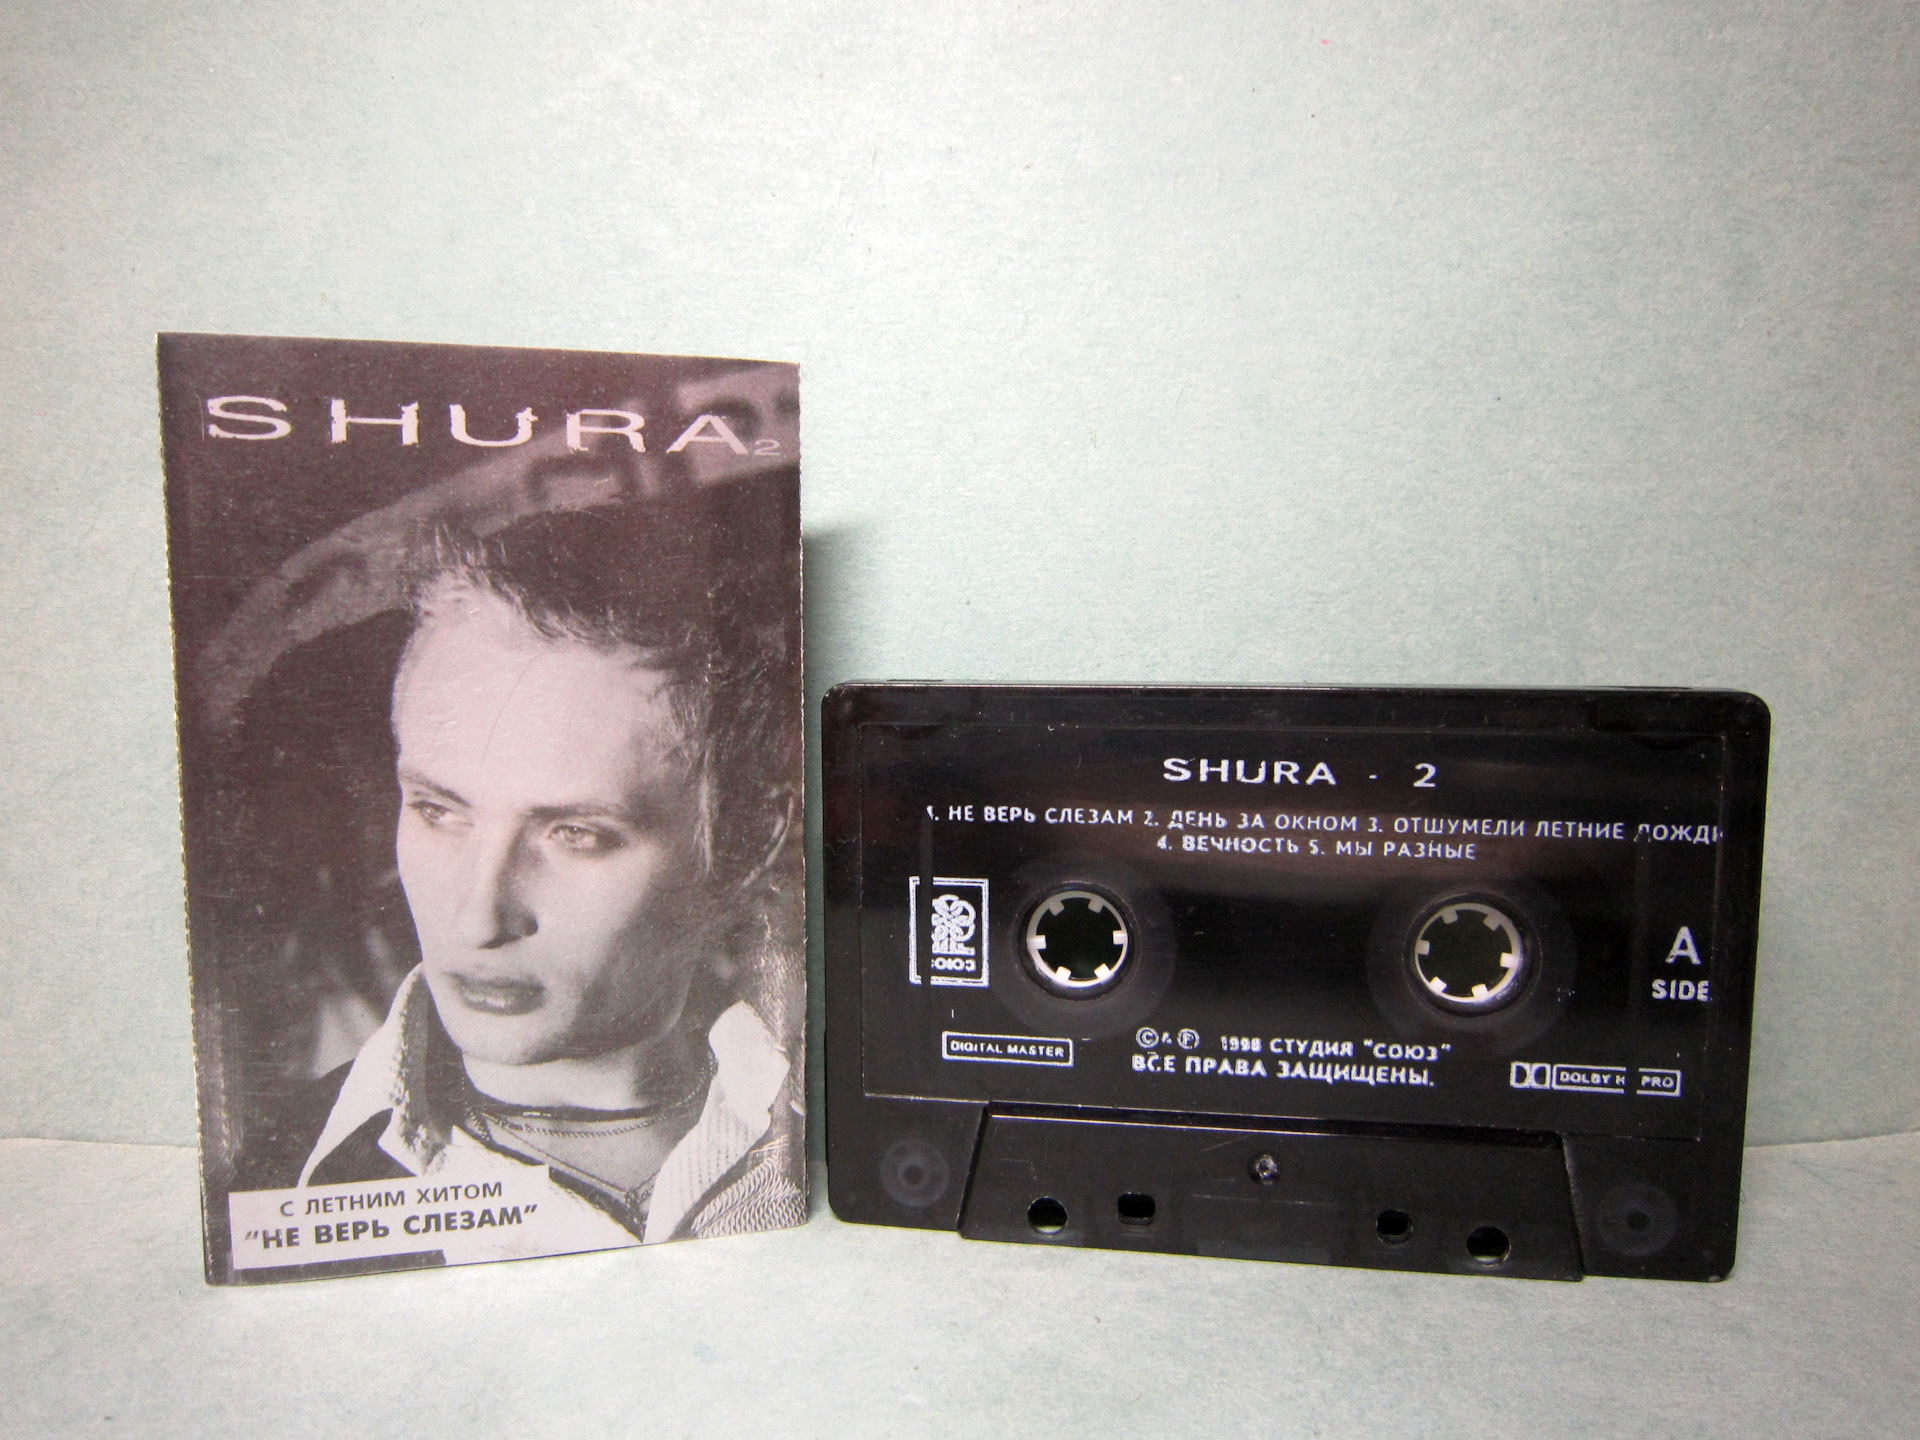 Ты не верь слезам скриптонит speed up. Shura 2 Шура кассета. Аудиокассеты Шура. Обложка аудиокассеты Шура. Первая кассета Шуры.